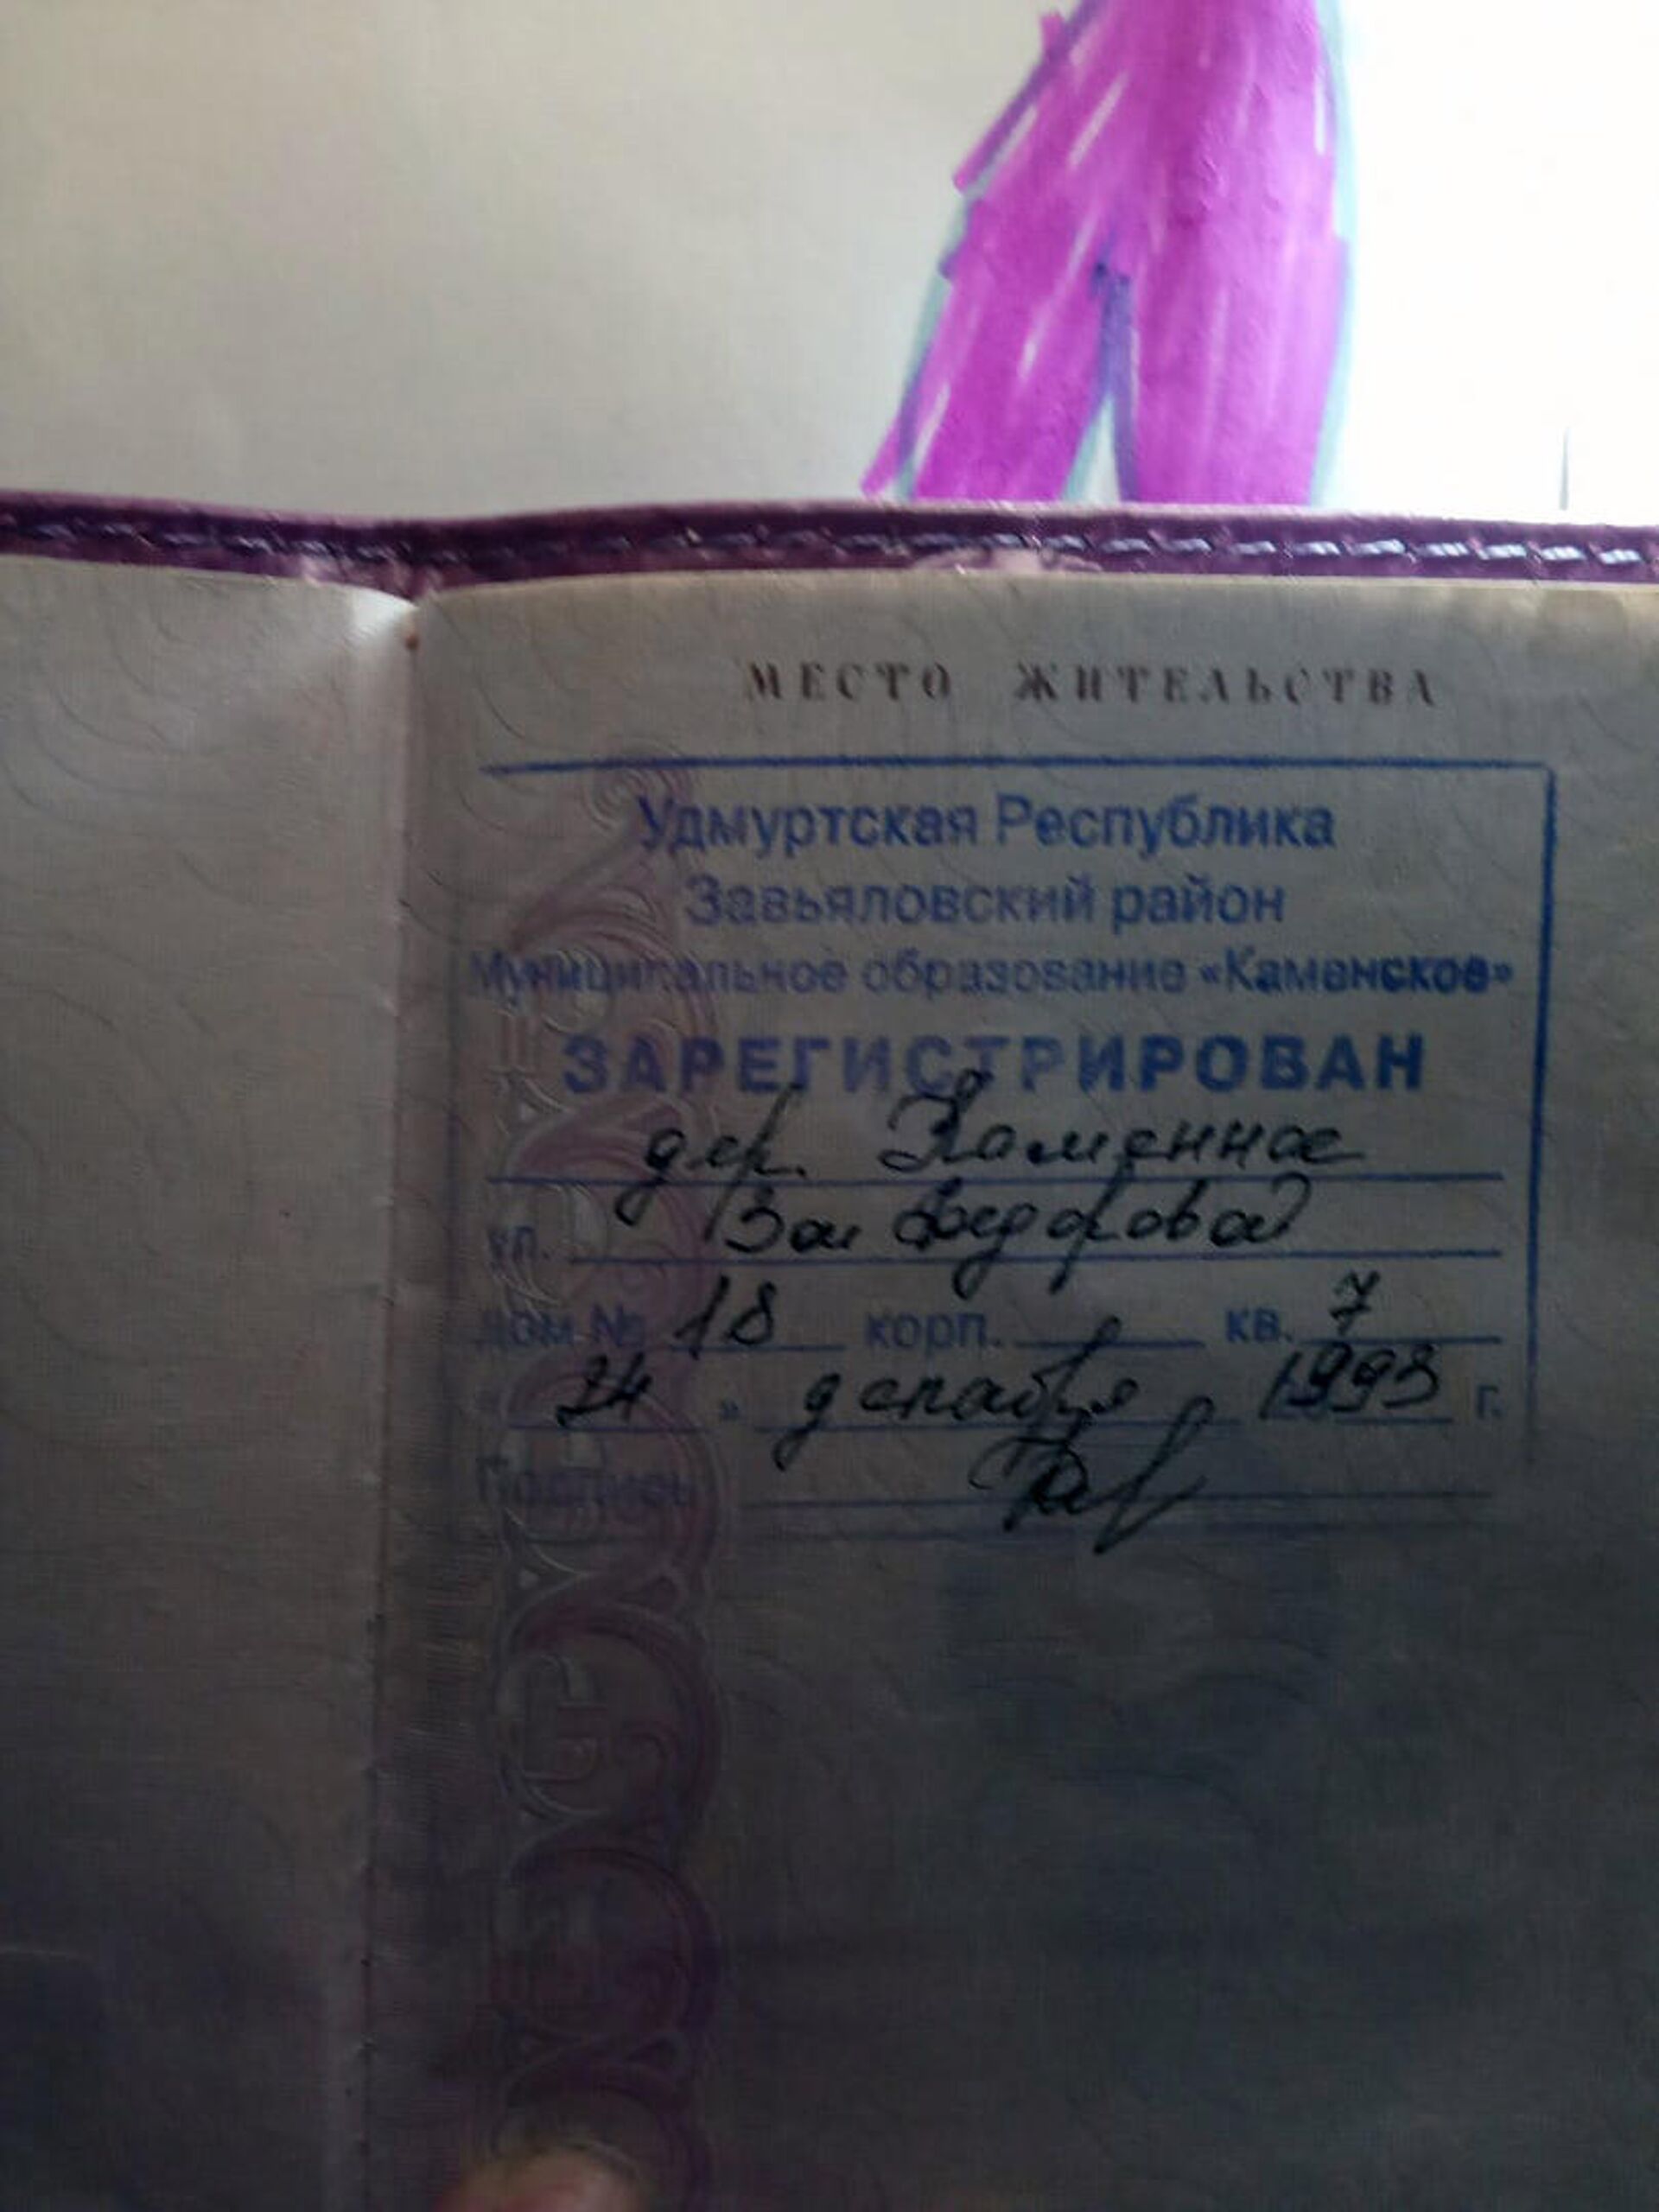   Страница из паспорта Четкаревой с пропиской - РИА Новости, 1920, 29.04.2021